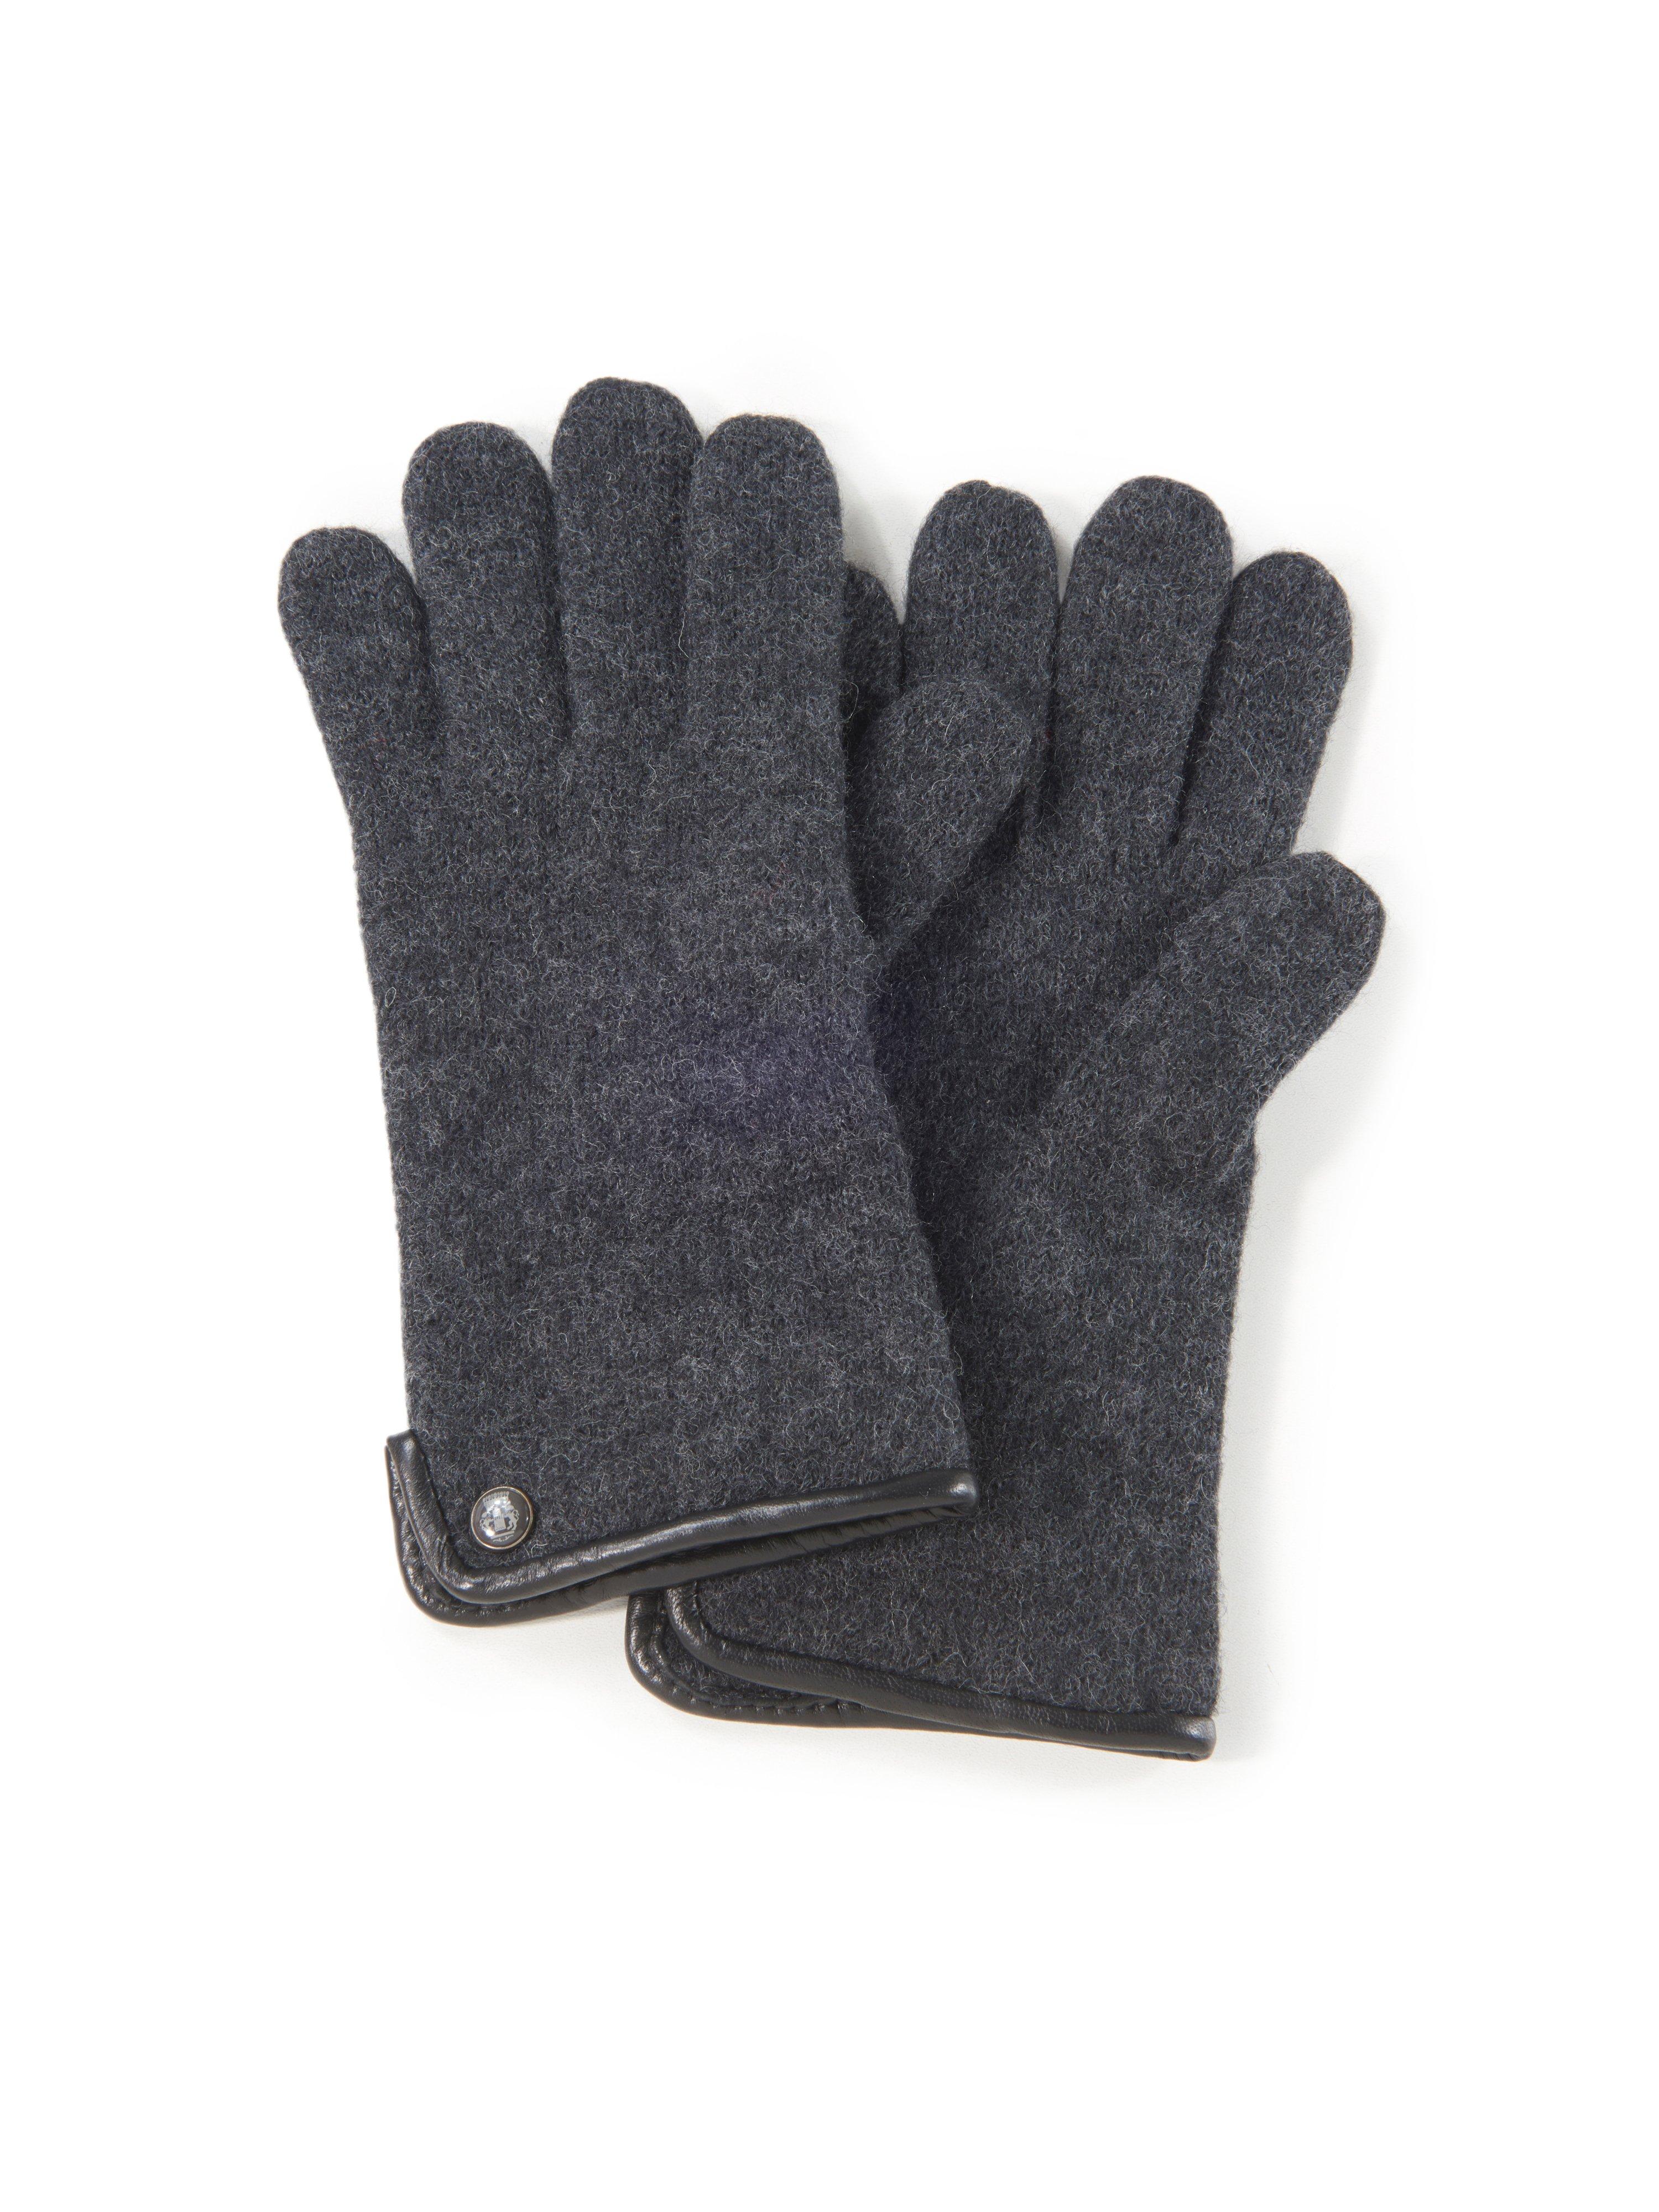 Roeckl - Les gants 100% laine vierge